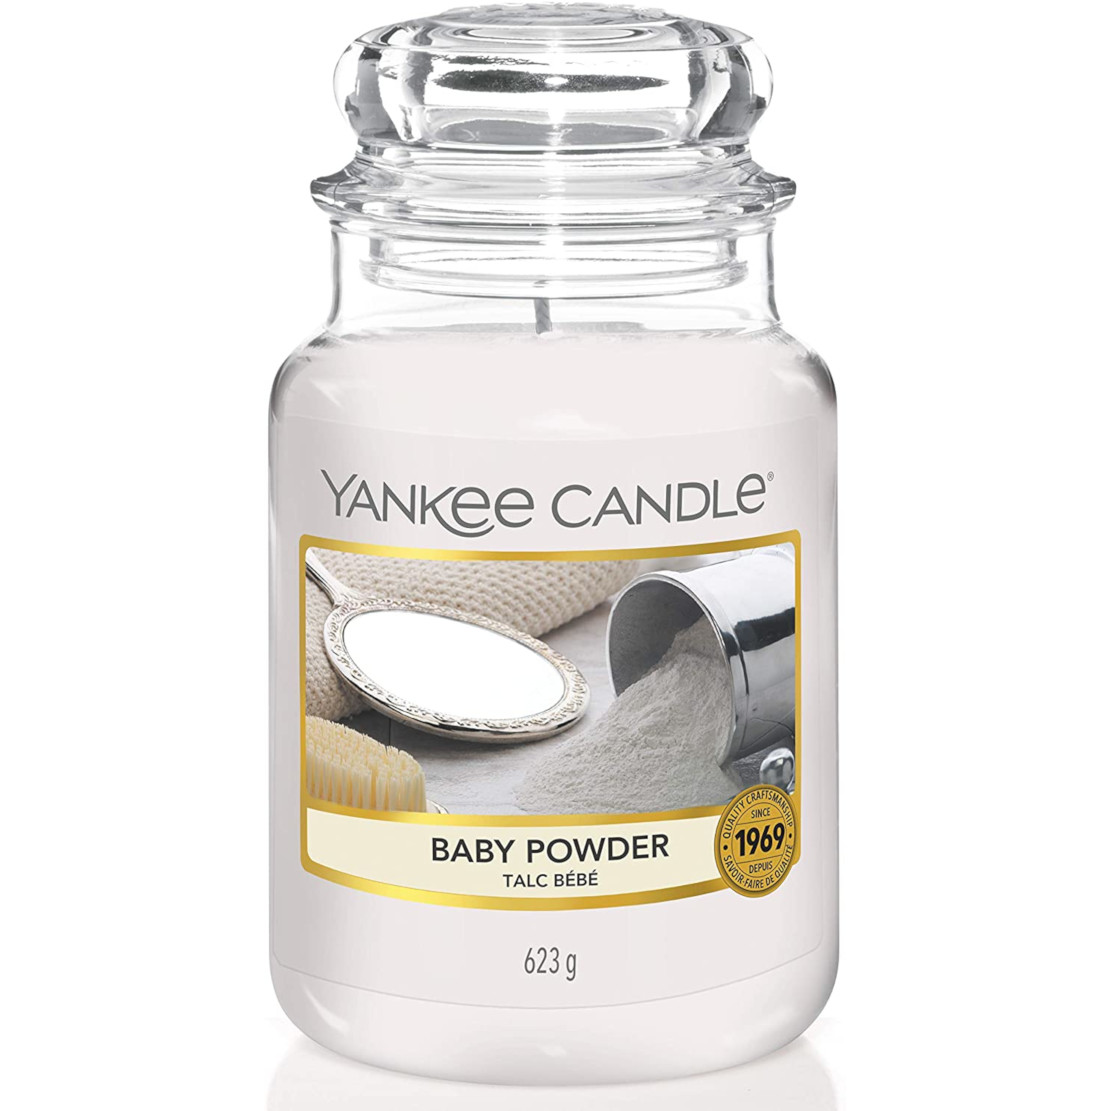 Yankee Candle Baby Powder Large Jar